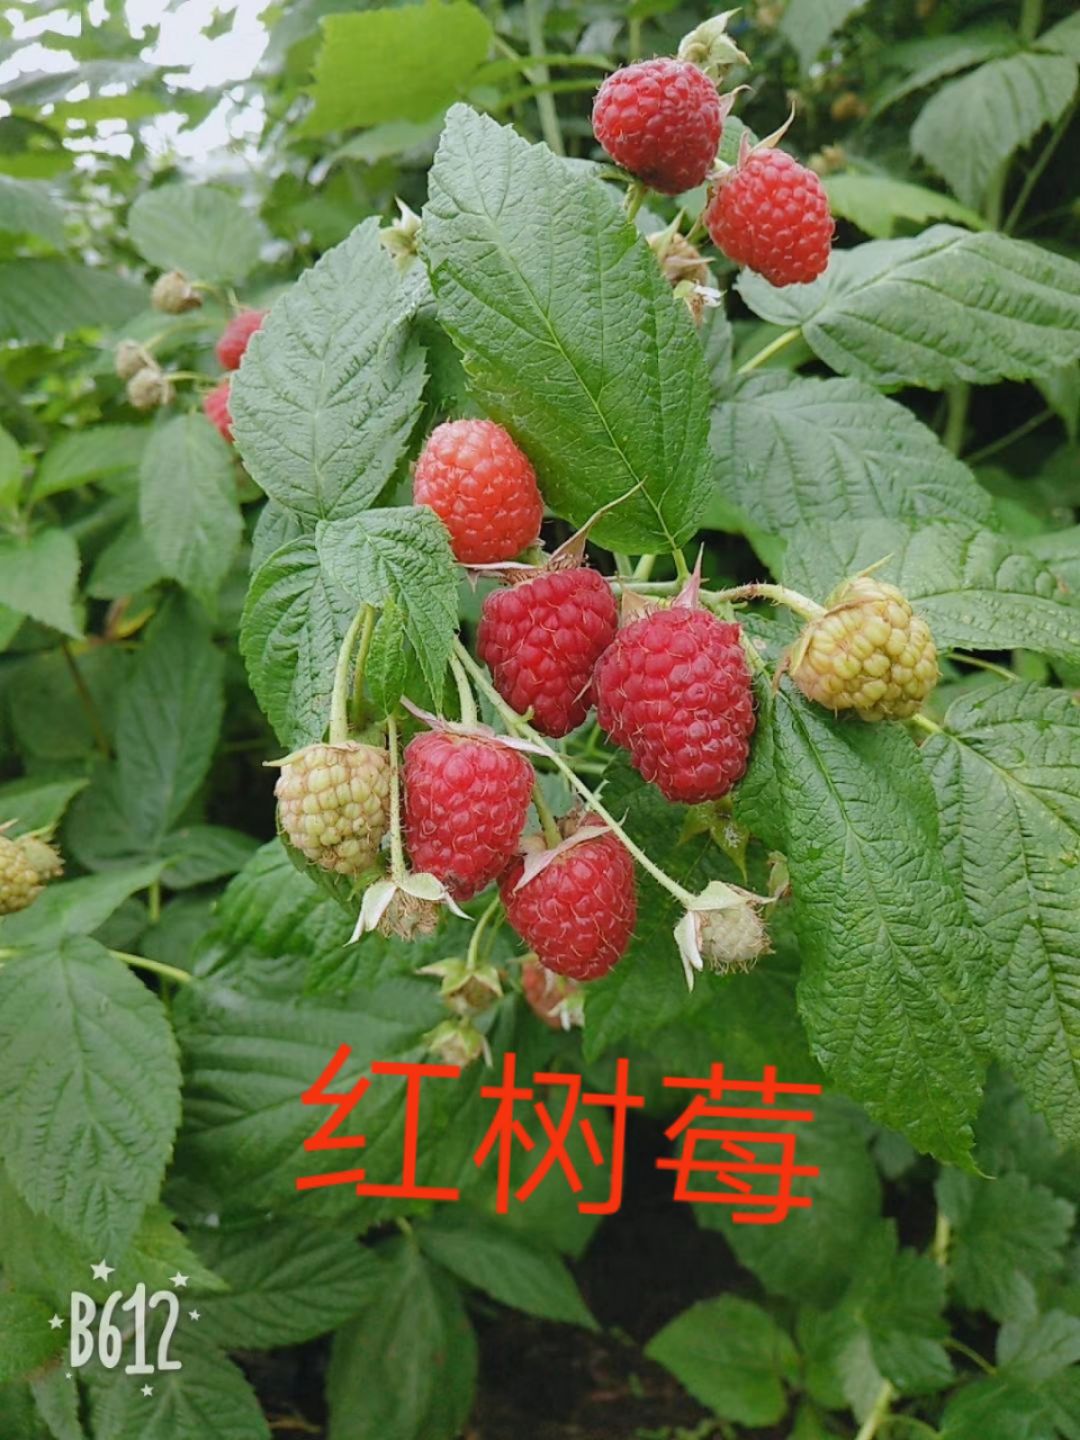 白山 树莓苗一品红树莓苗